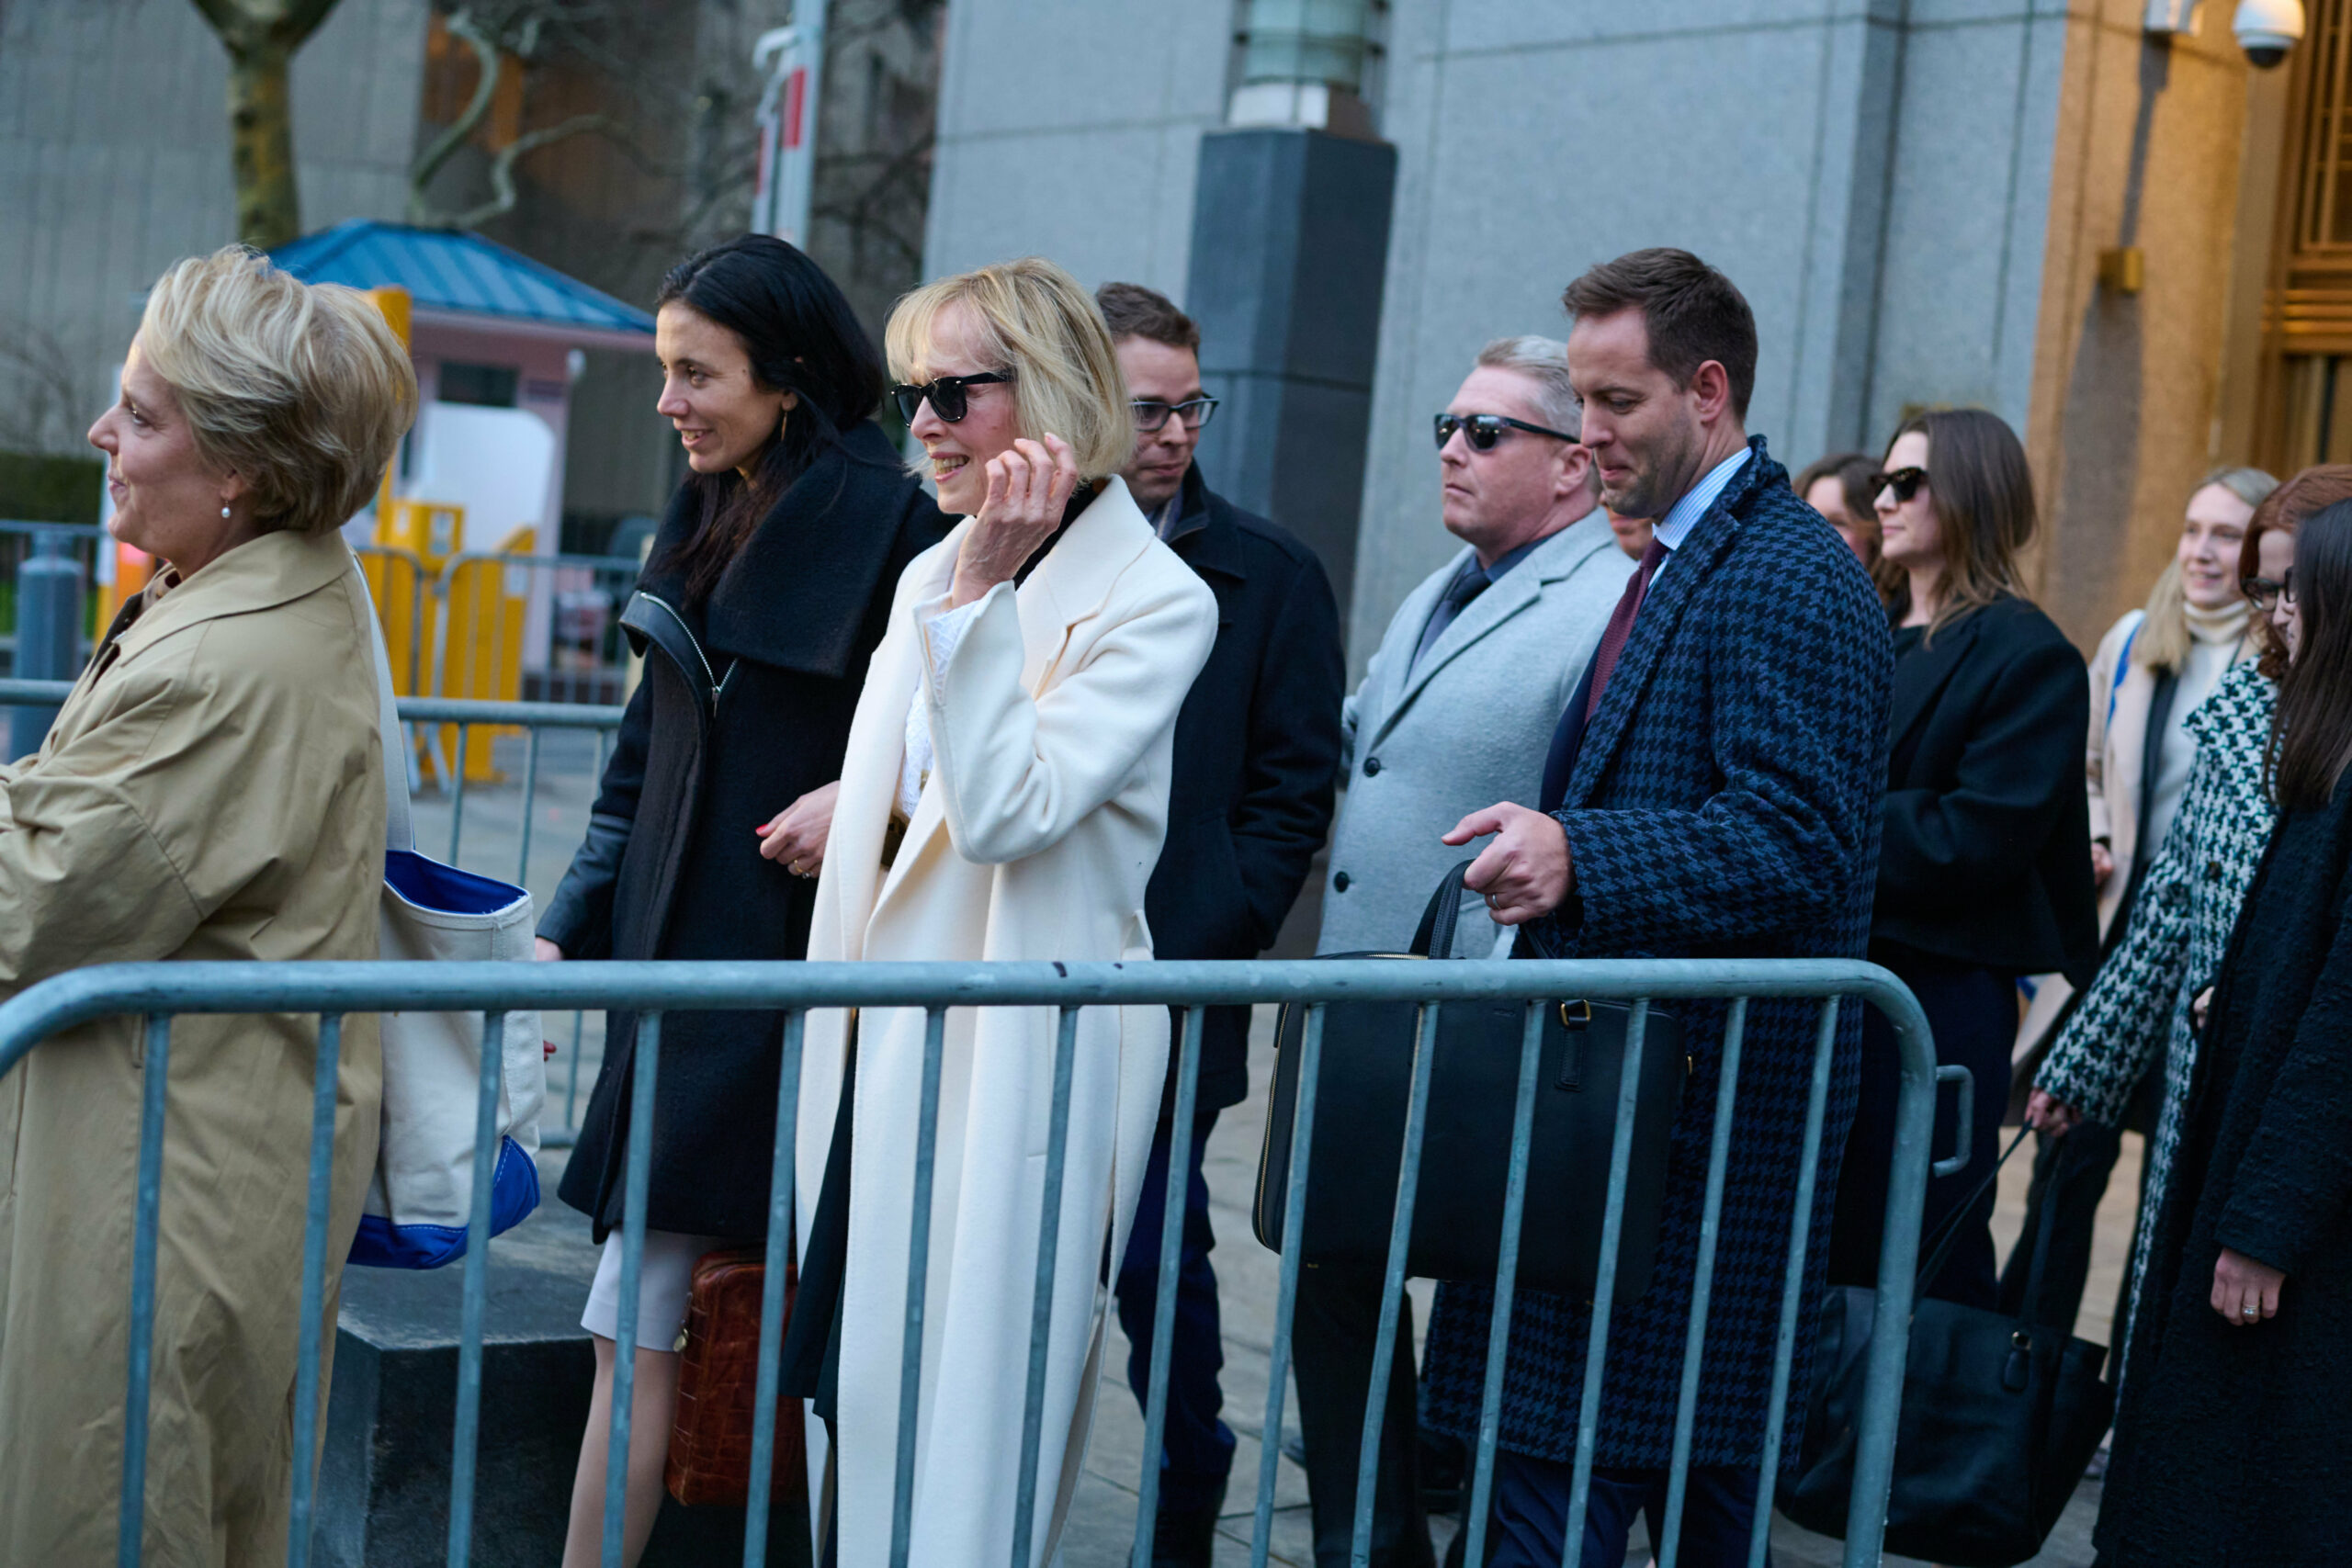 Джин Кэрролл покидает Федеральный суд Манхэттена. Фото Edna Leshowitz / Zuma Press / Scanpix / LETA.